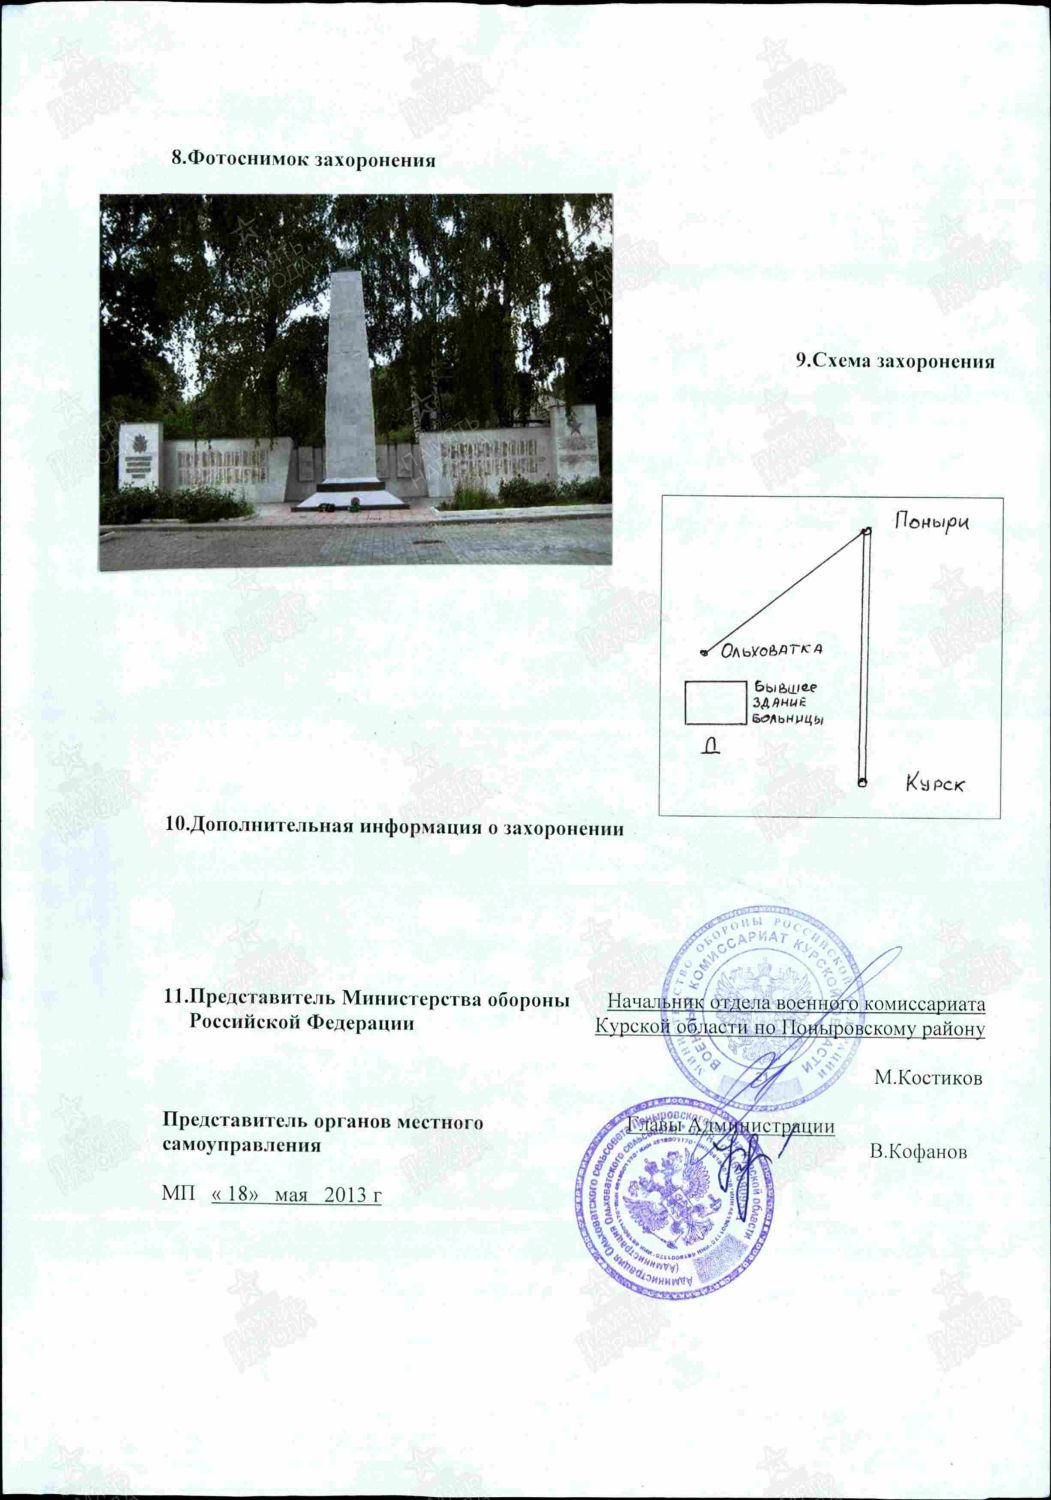 Поныровский р-н, с. Ольховатка. Монумент 6-ой гв. стр. дивизии